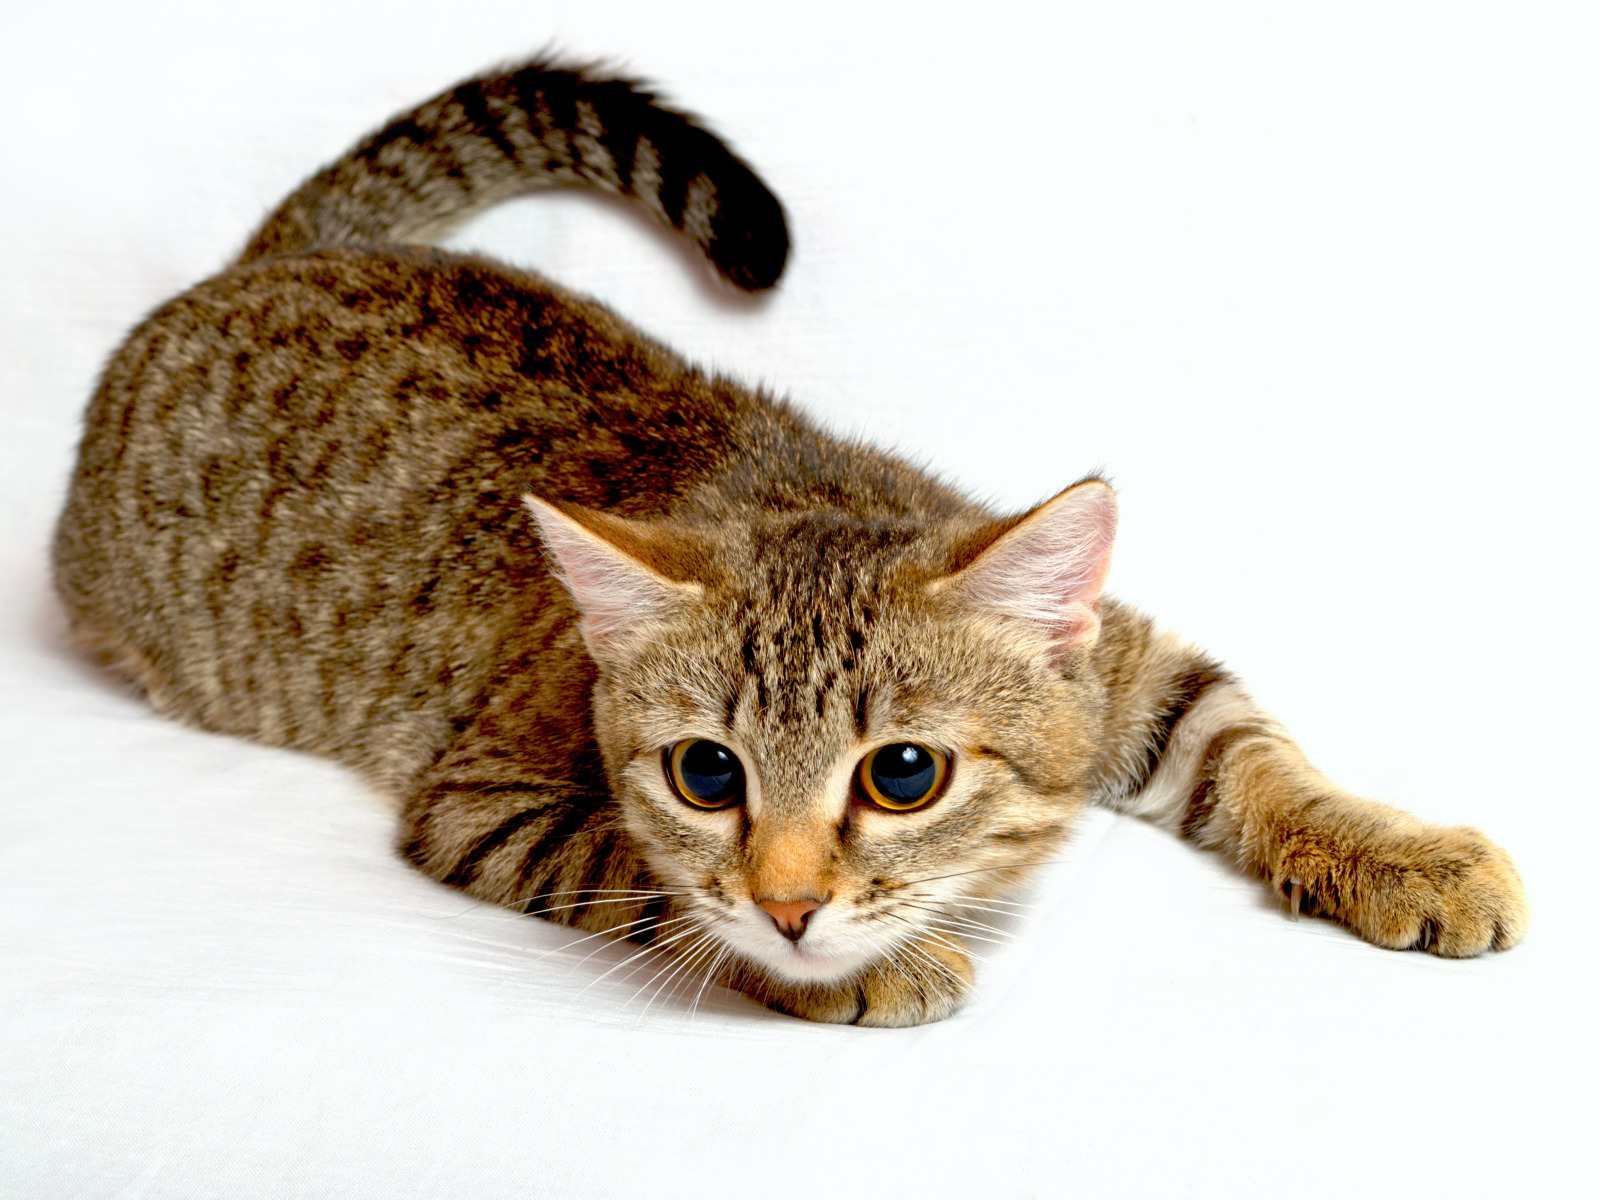 Big jpg image. Кошка. Калифорнийская сияющая кошка. Полосатые коты. Красивая полосатая кошка.